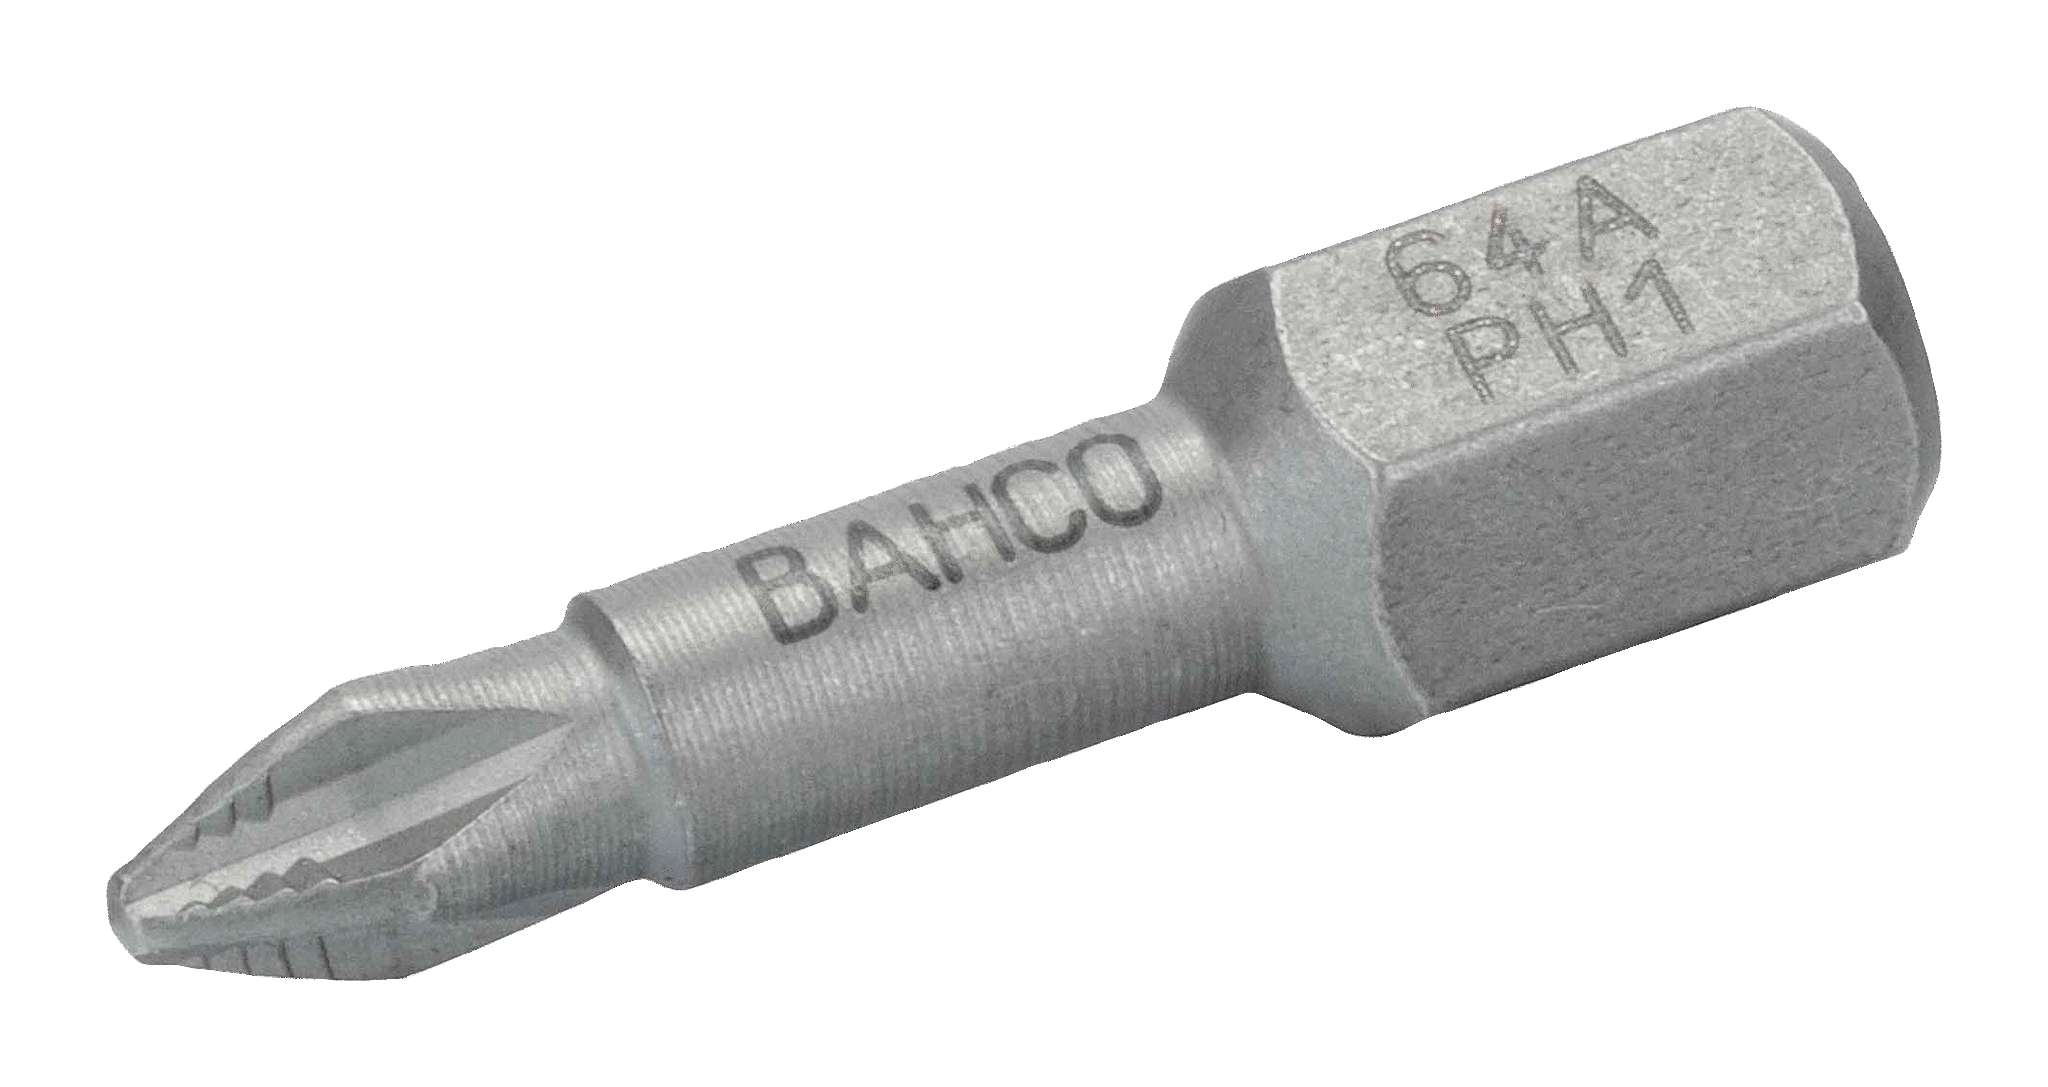 Торсионные биты ACR для отверток Phillips, 25 мм BAHCO 64A/PH3